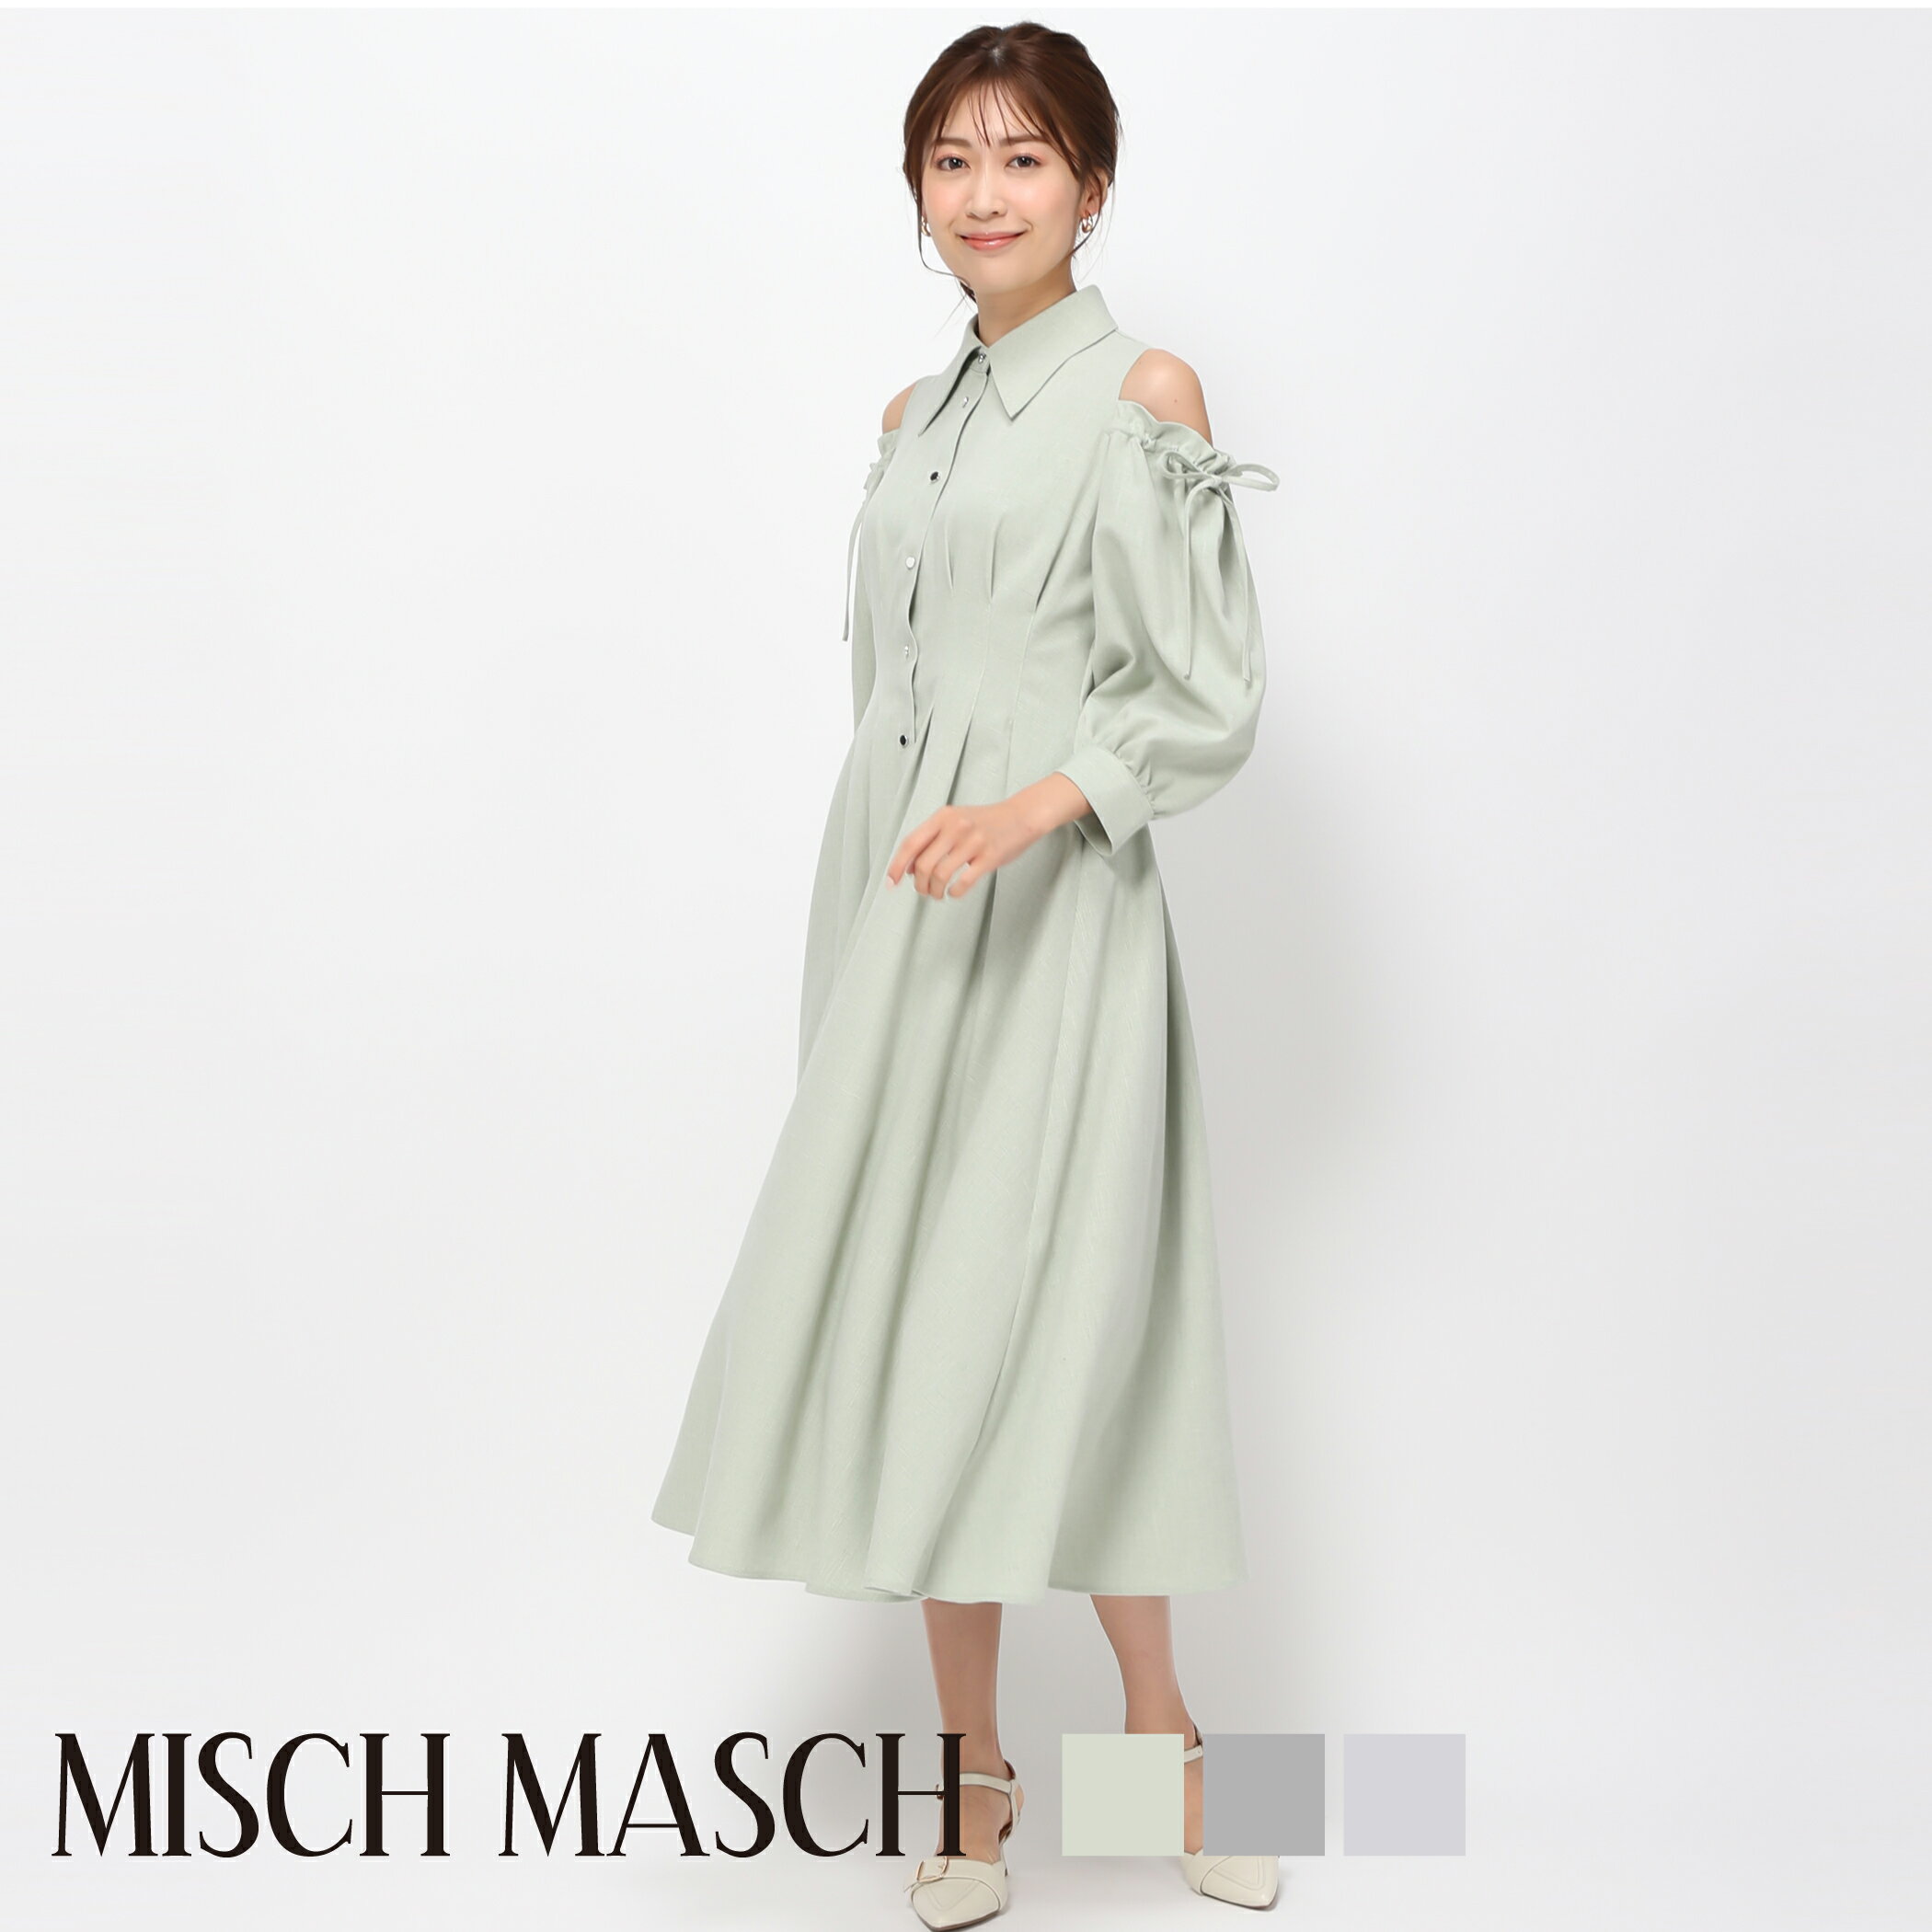 【MISCH MASCH】【ミッシュマッシュ】【公式】【フェミニン】カットアウトシャツワンピース/MM417412